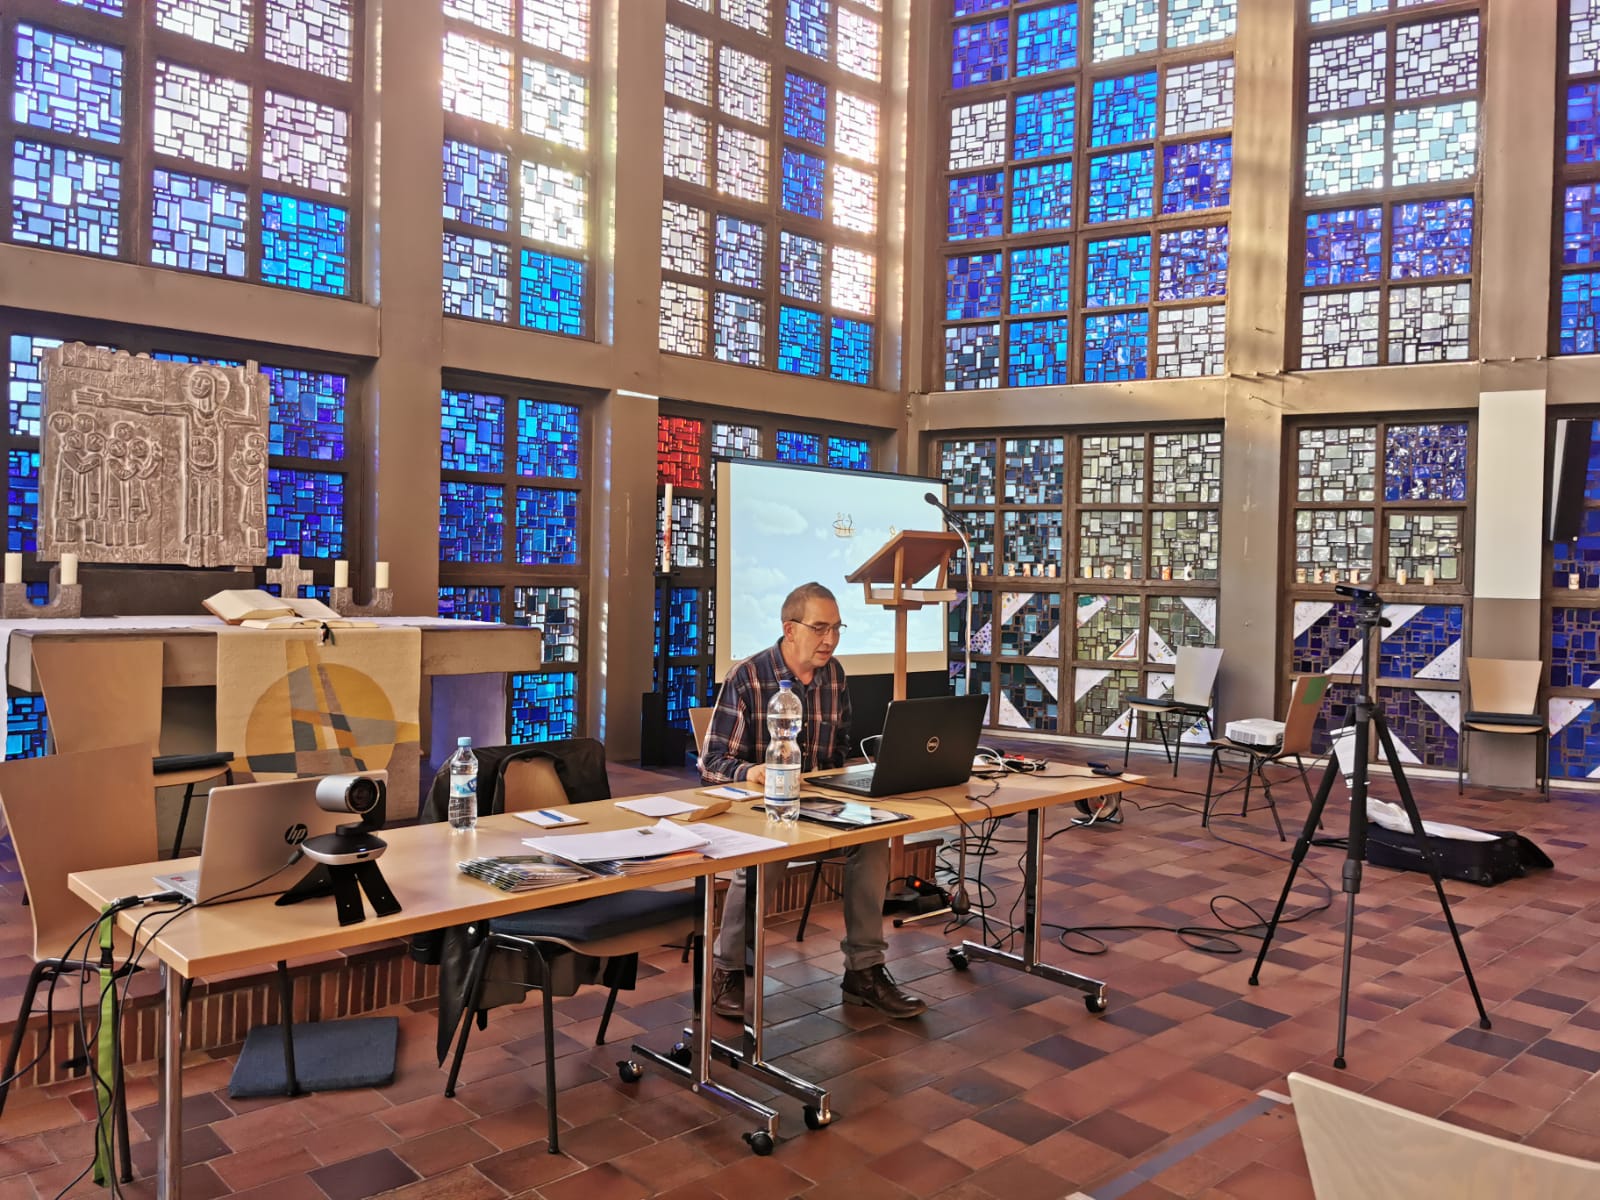 Mensch sitzt mit Technik für eine digitale Veranstaltung in einer Kirche vor Buntglasfenstern